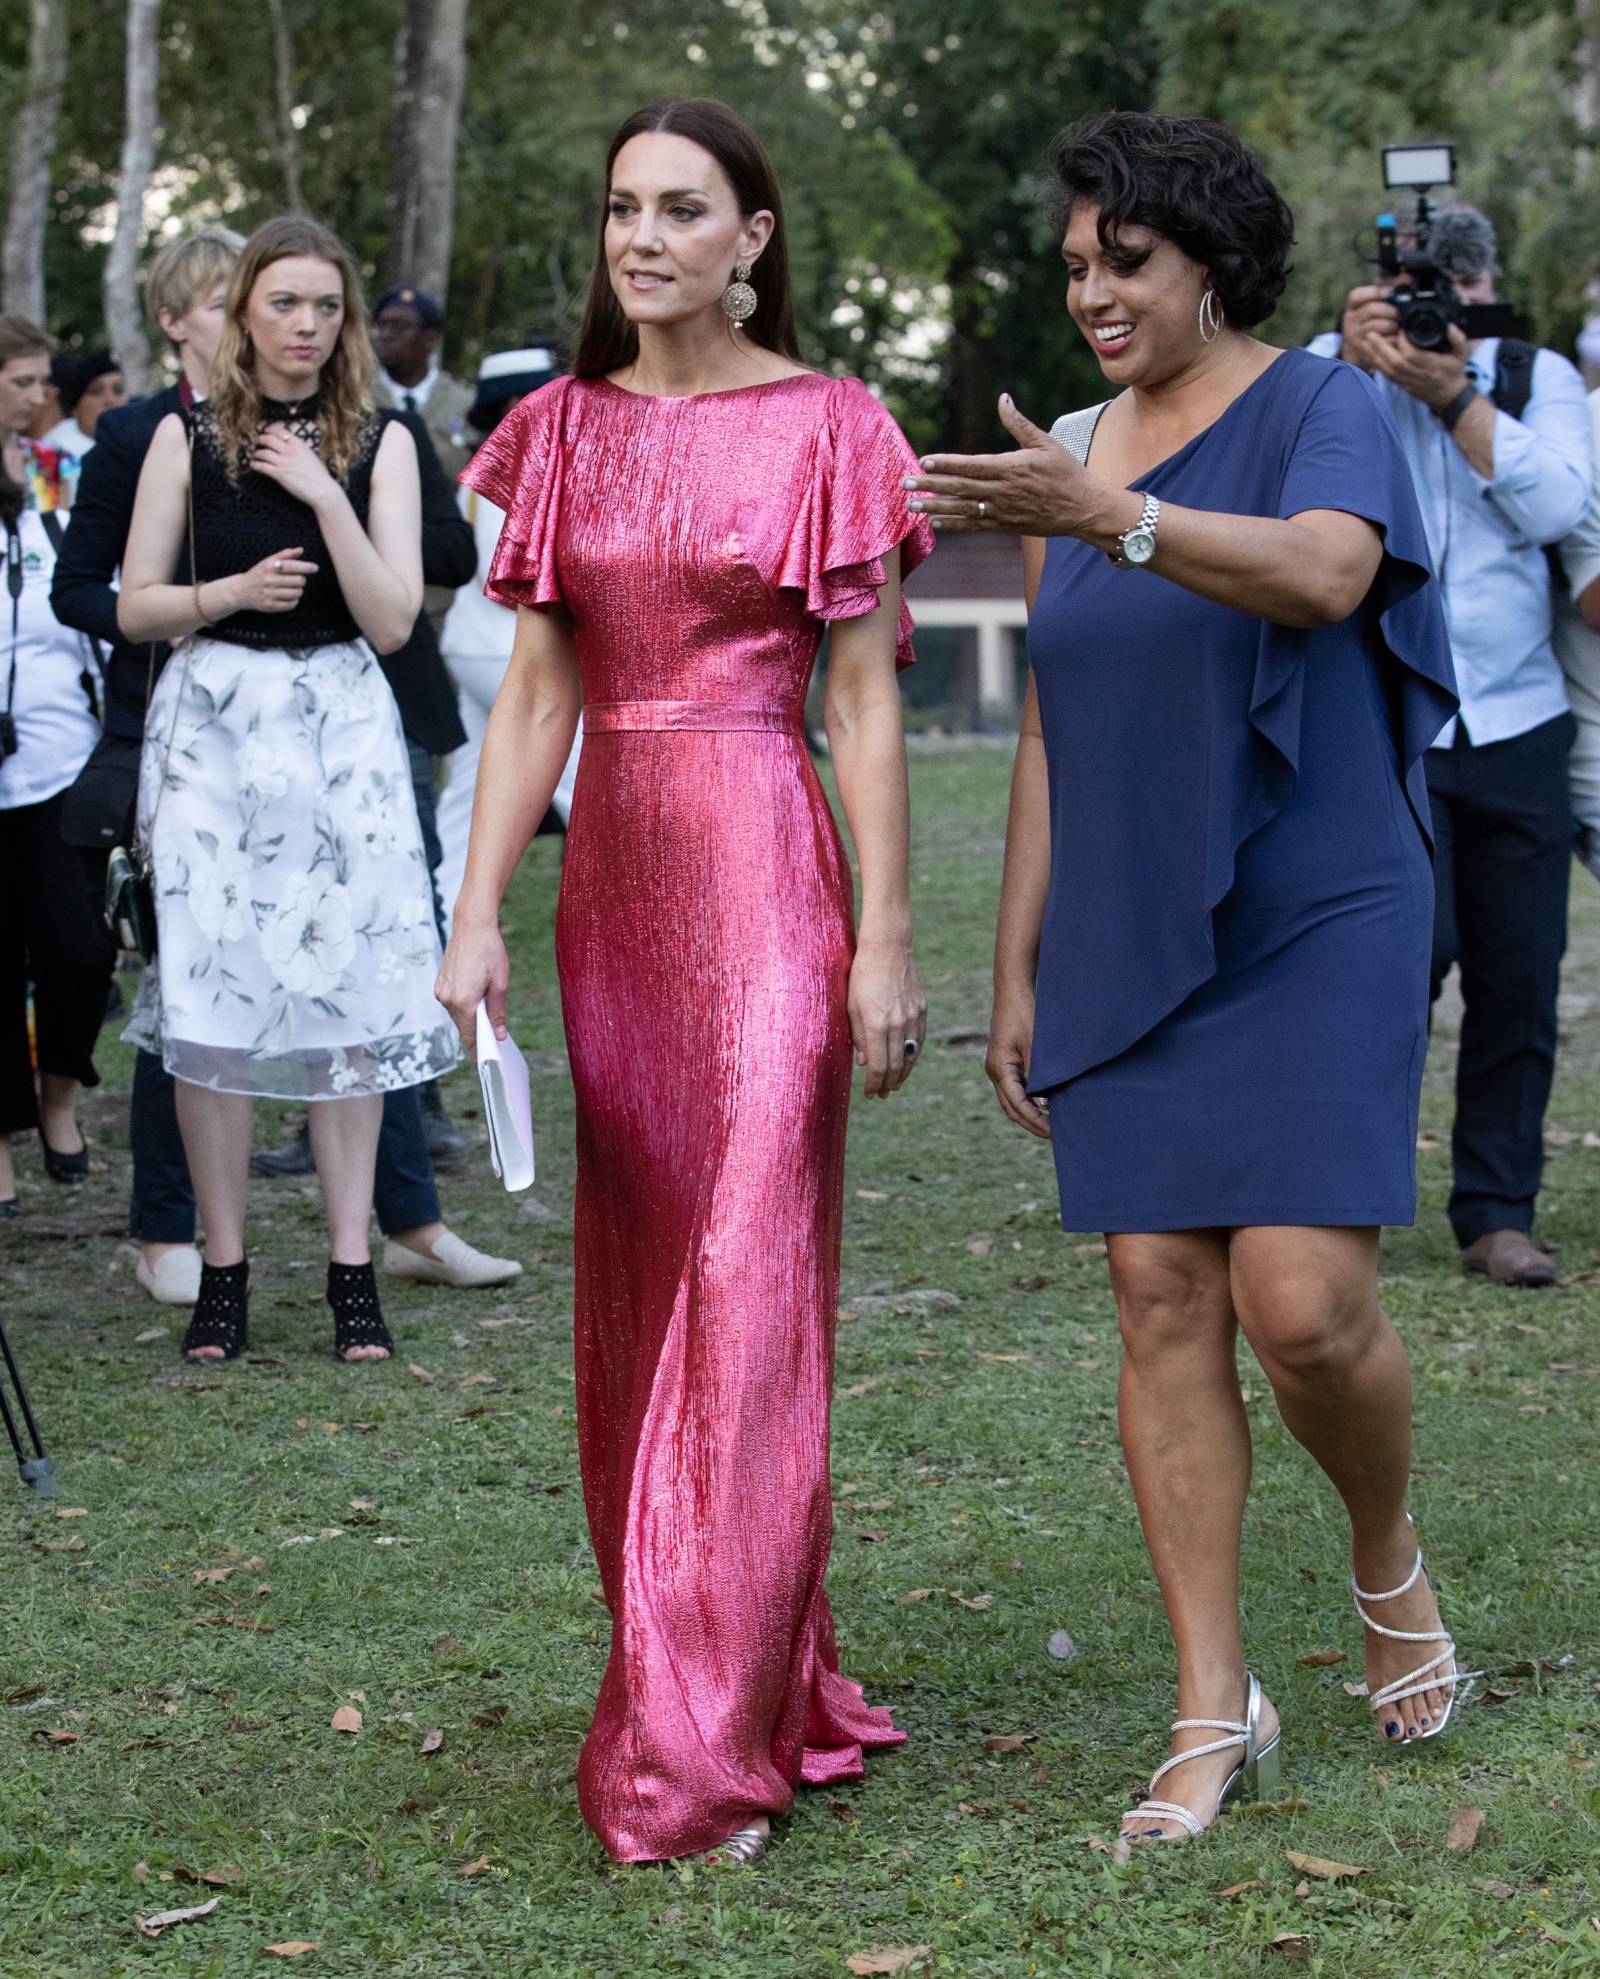 Księżna Kate Middleton w połyskującej, różowej sukni od The Vapires Wife podczas wizyty w Belize.